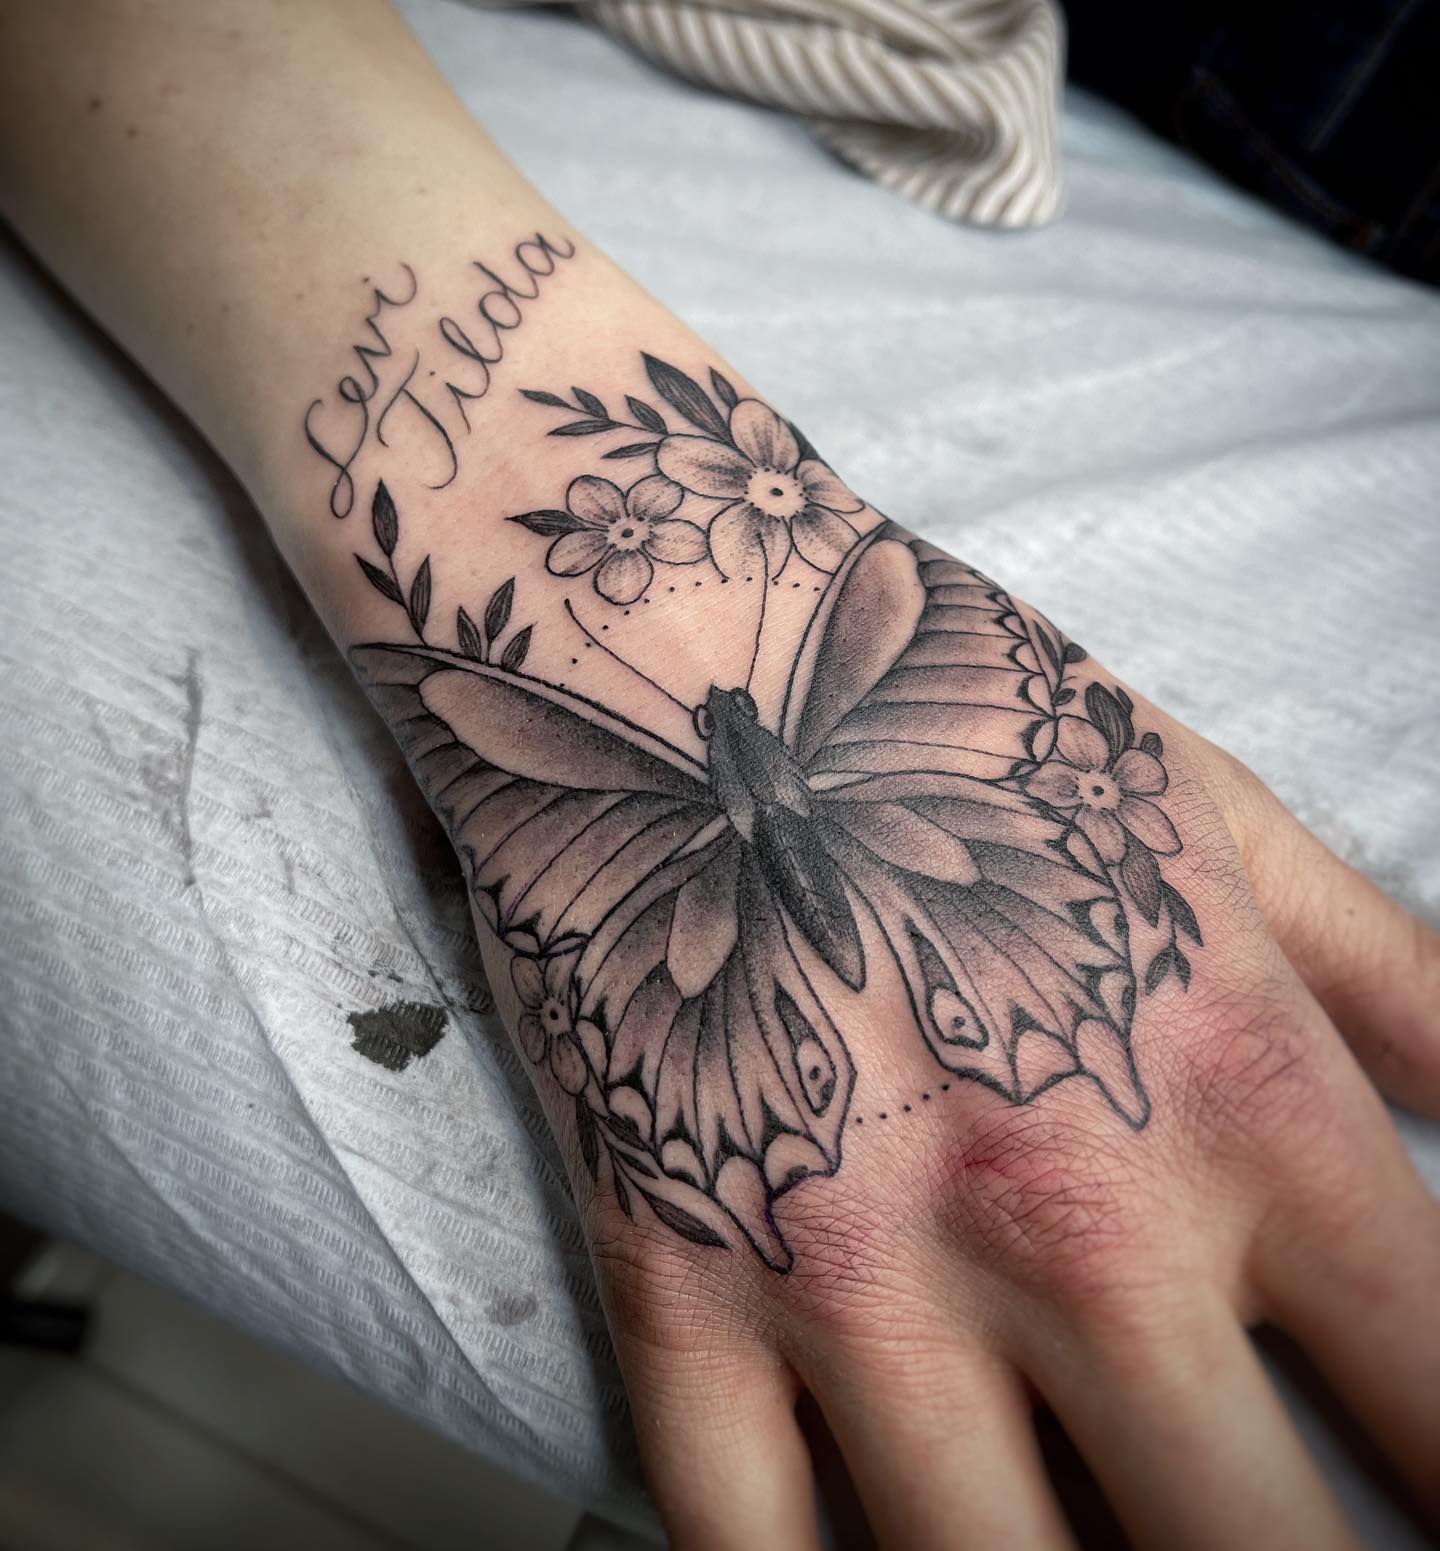 Hand Butterflies Tattoos | Butterfly Hand Tattoo Ideas